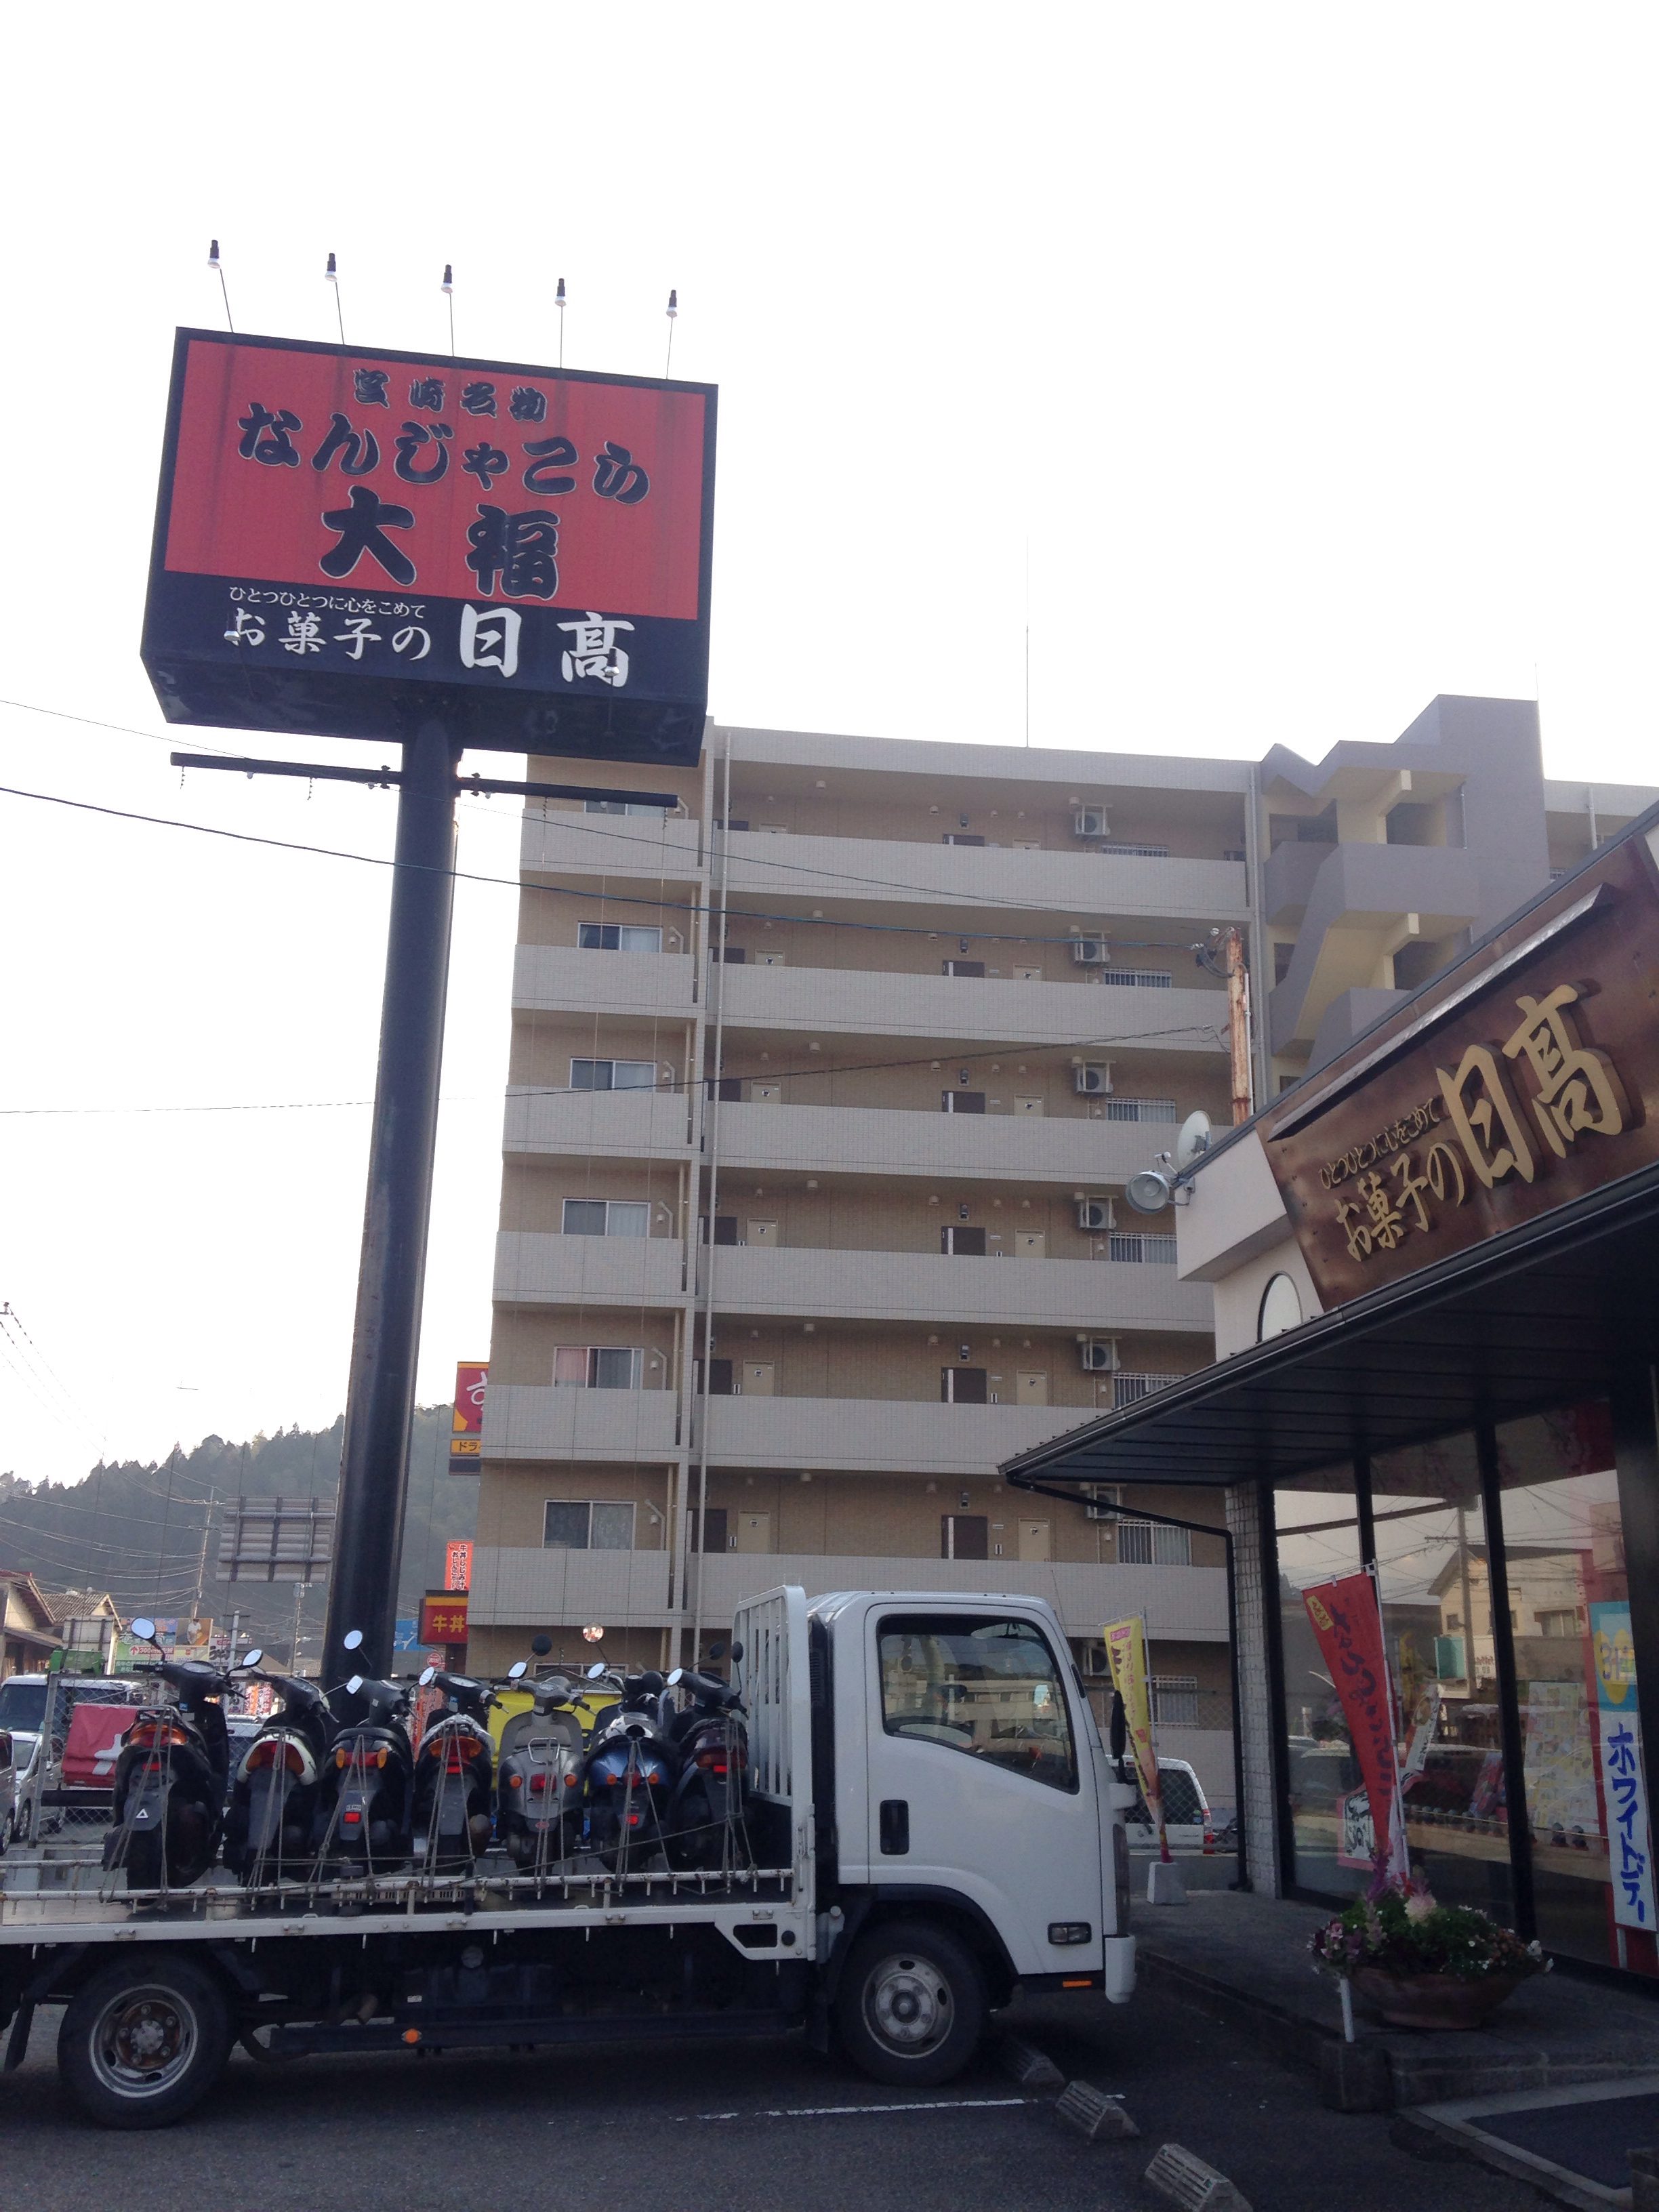 スクーター原付バイク買取処分熊本、みのまるバイク